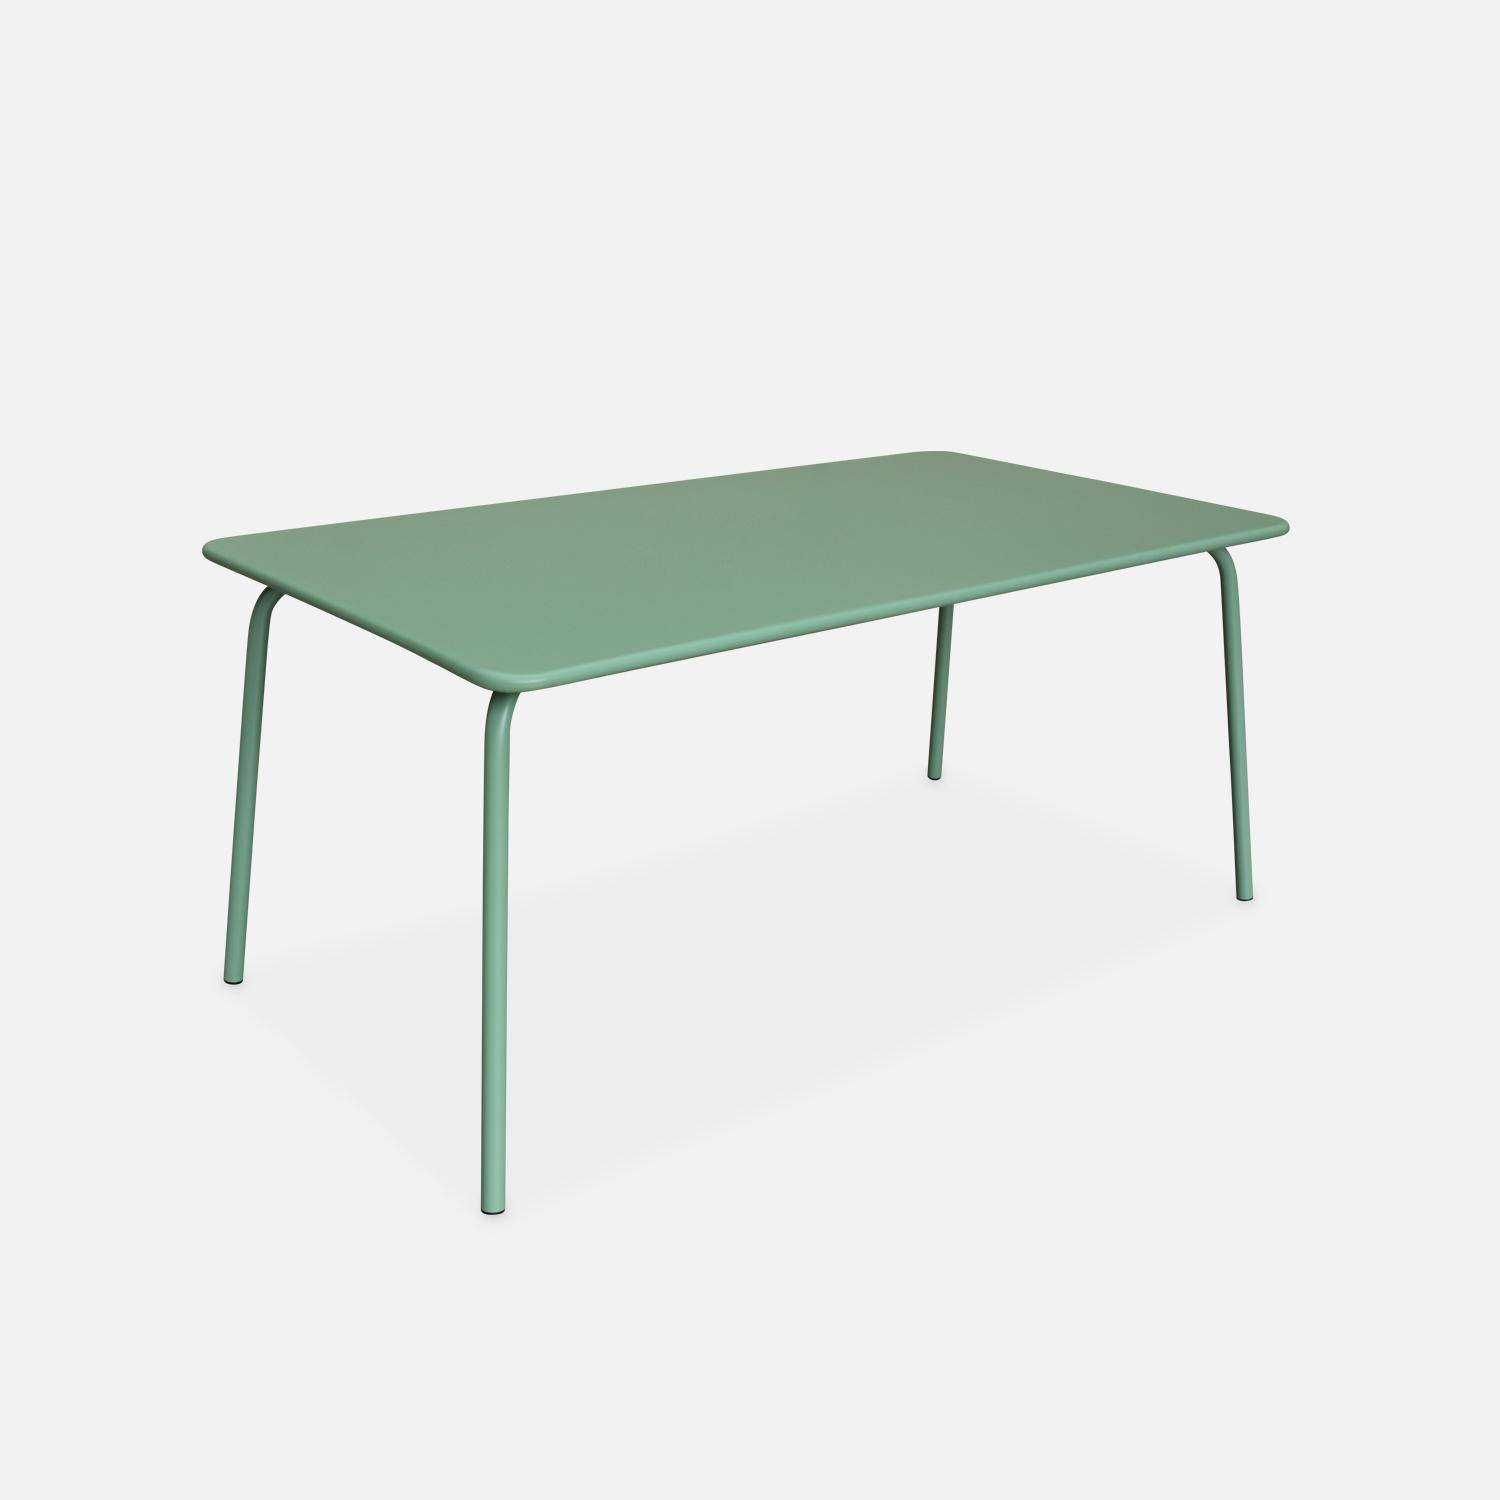 Table de jardin en métal (acier peint par électrophorèse avec protection antirouille) 160x90cm vert jade,sweeek,Photo1